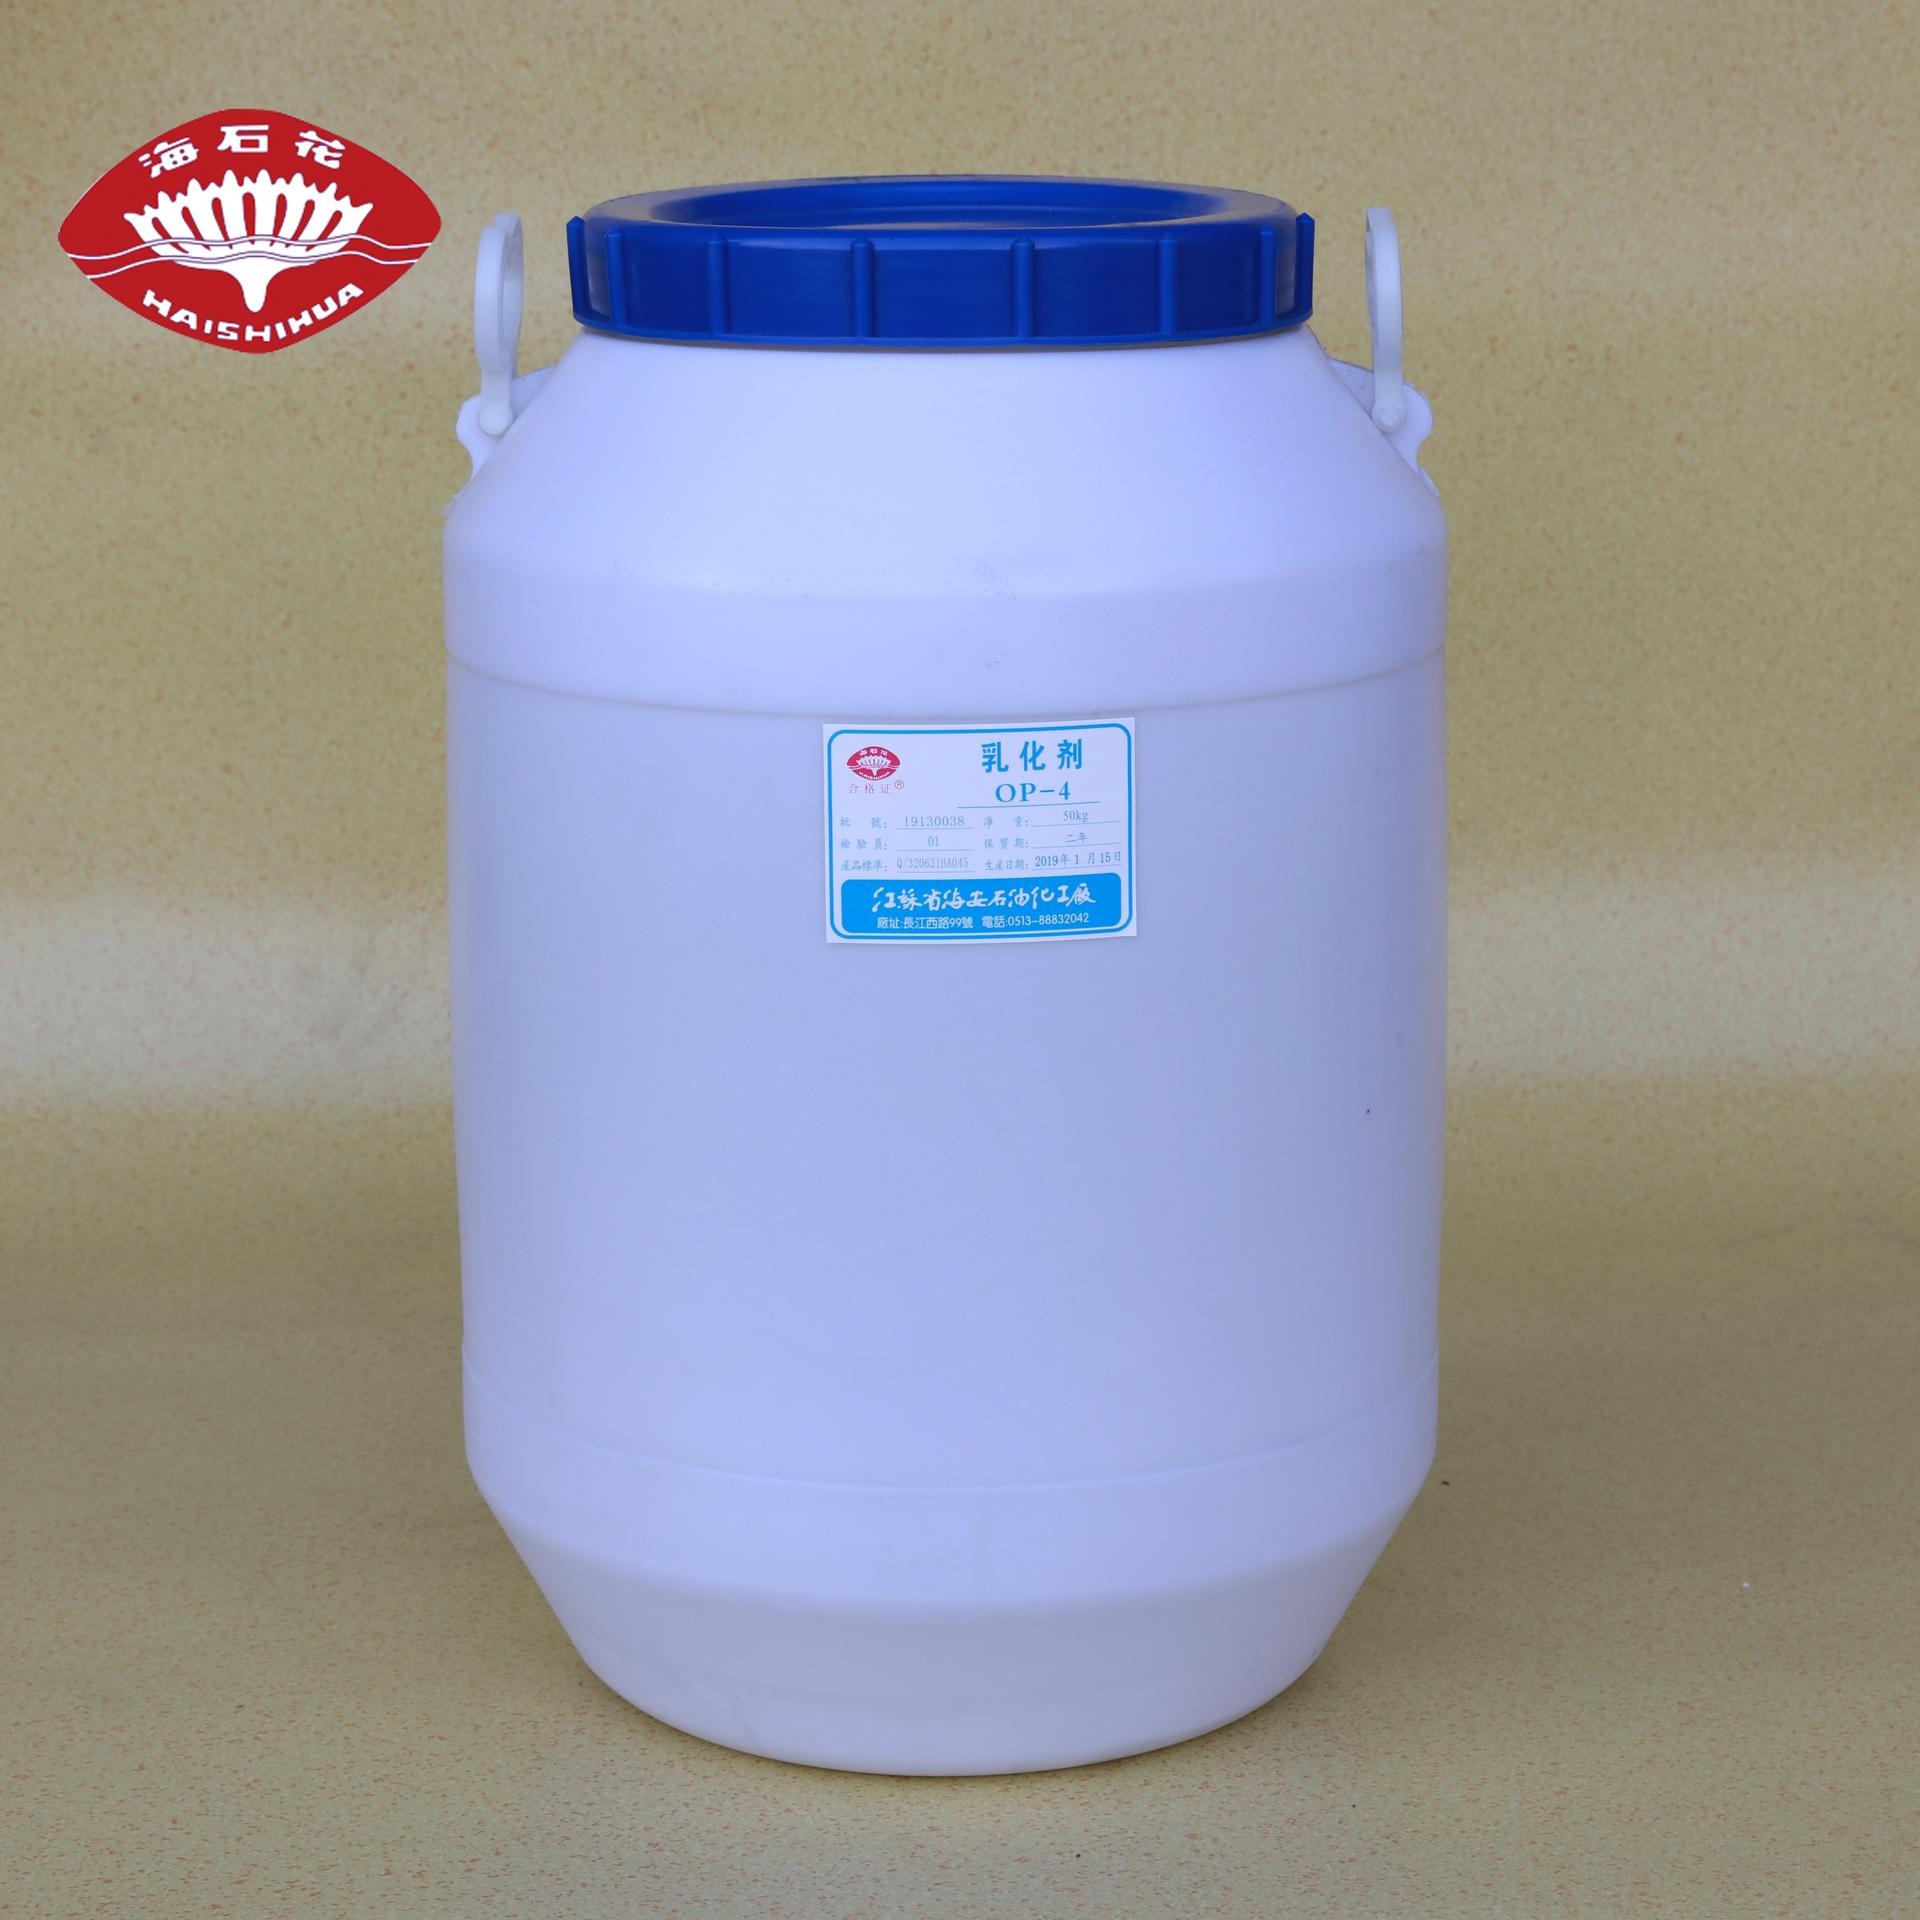 聚丙烯腈皂煮剂 乳化剂OP-5 塑料制品传送带的抗静电剂 海石花